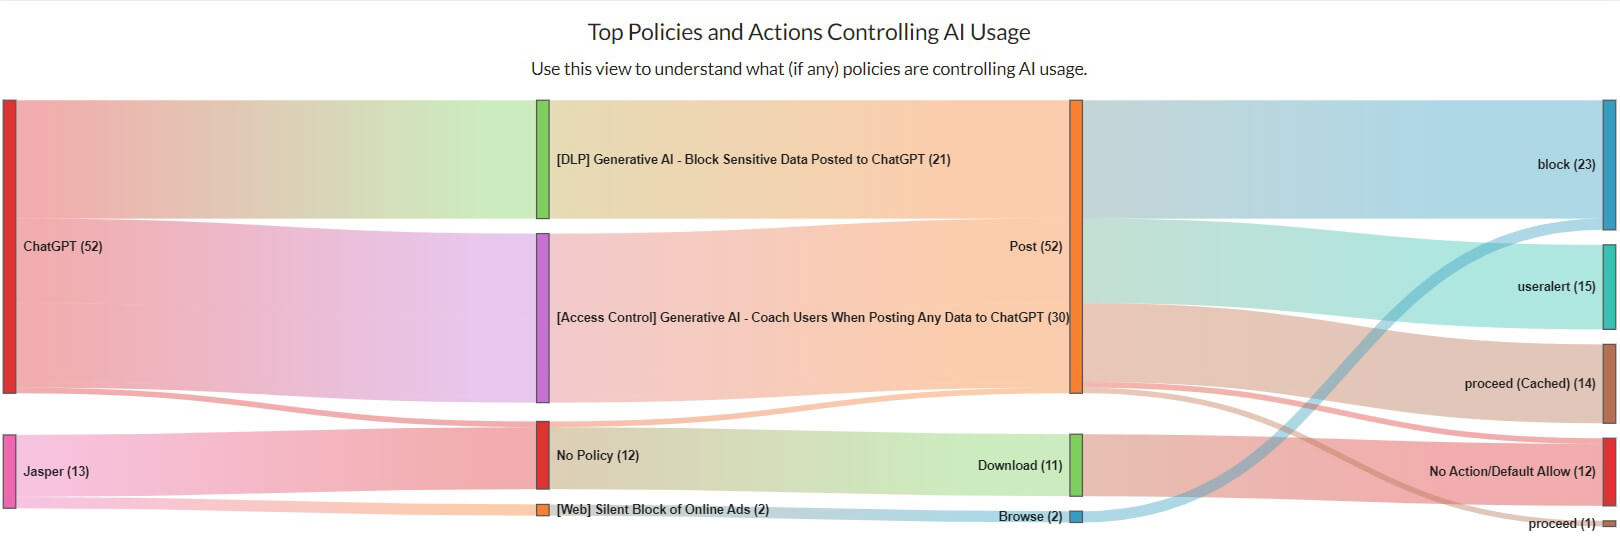 Principales políticas y acciones que controlan el uso de IA - Netskope Advanced Analytics